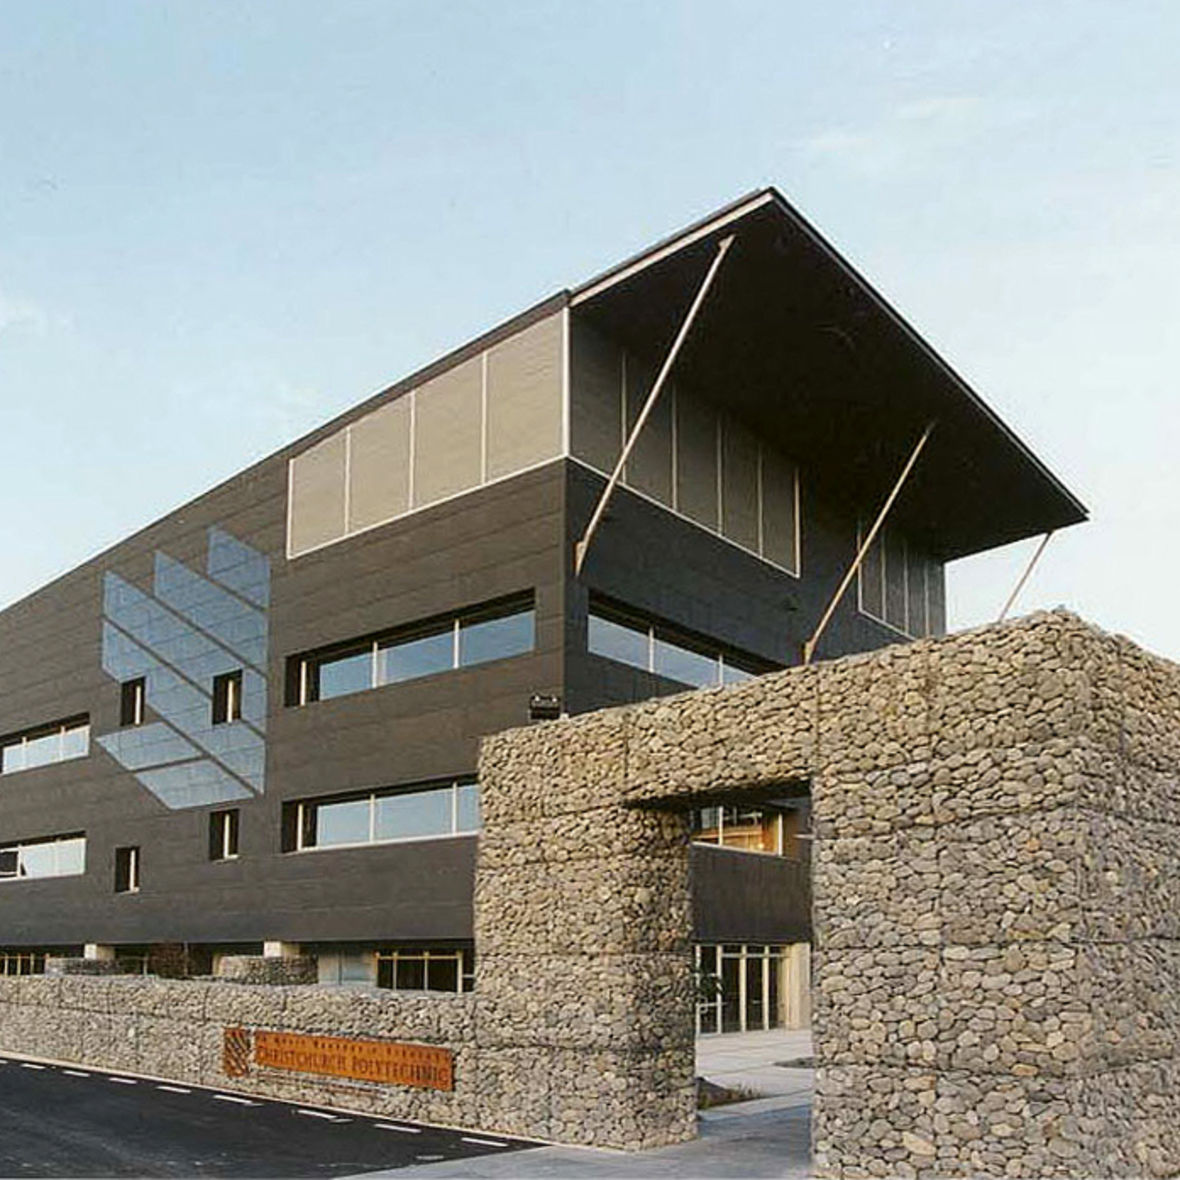 Ara Institute of Canterbury
Rakaia Centre